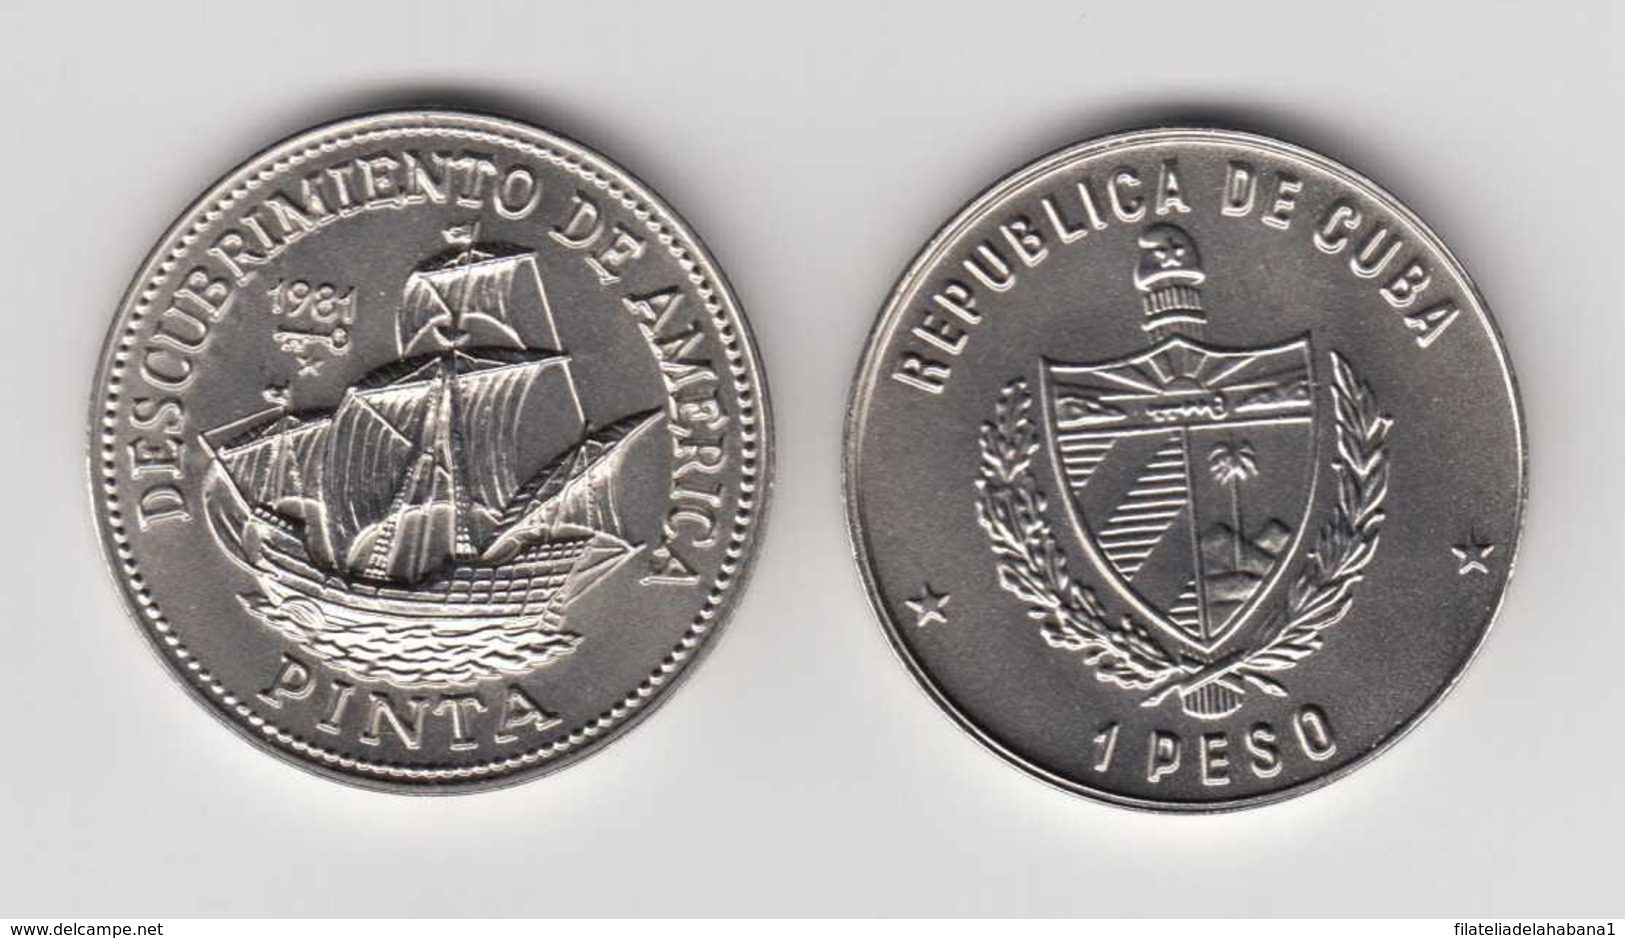 1981-MN-5 CUBA. KM 66. 1$. 1981. COPPER- NICKEL. UNC. CARAVELA LA PINTA. DESCUBRIMIENTO. DISCOVERY SHIP. - Kuba